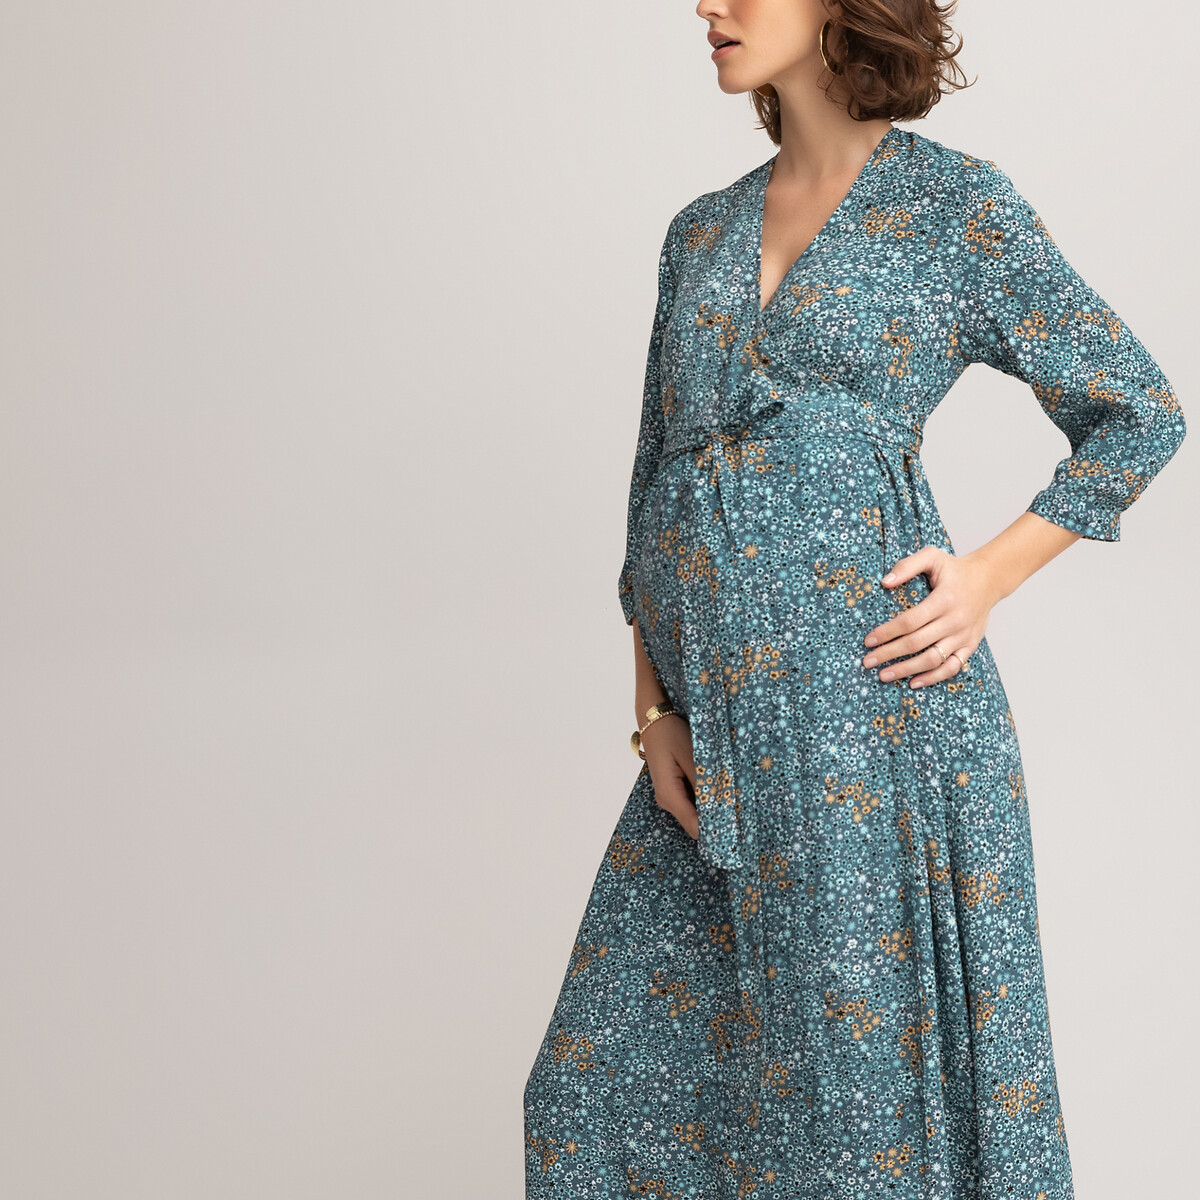 Платье LaRedoute Для периода беременности длинное с длинными рукавами с рисунком 38 (FR) - 44 (RUS) разноцветный, размер 38 (FR) - 44 (RUS) Для периода беременности длинное с длинными рукавами с рисунком 38 (FR) - 44 (RUS) разноцветный - фото 2